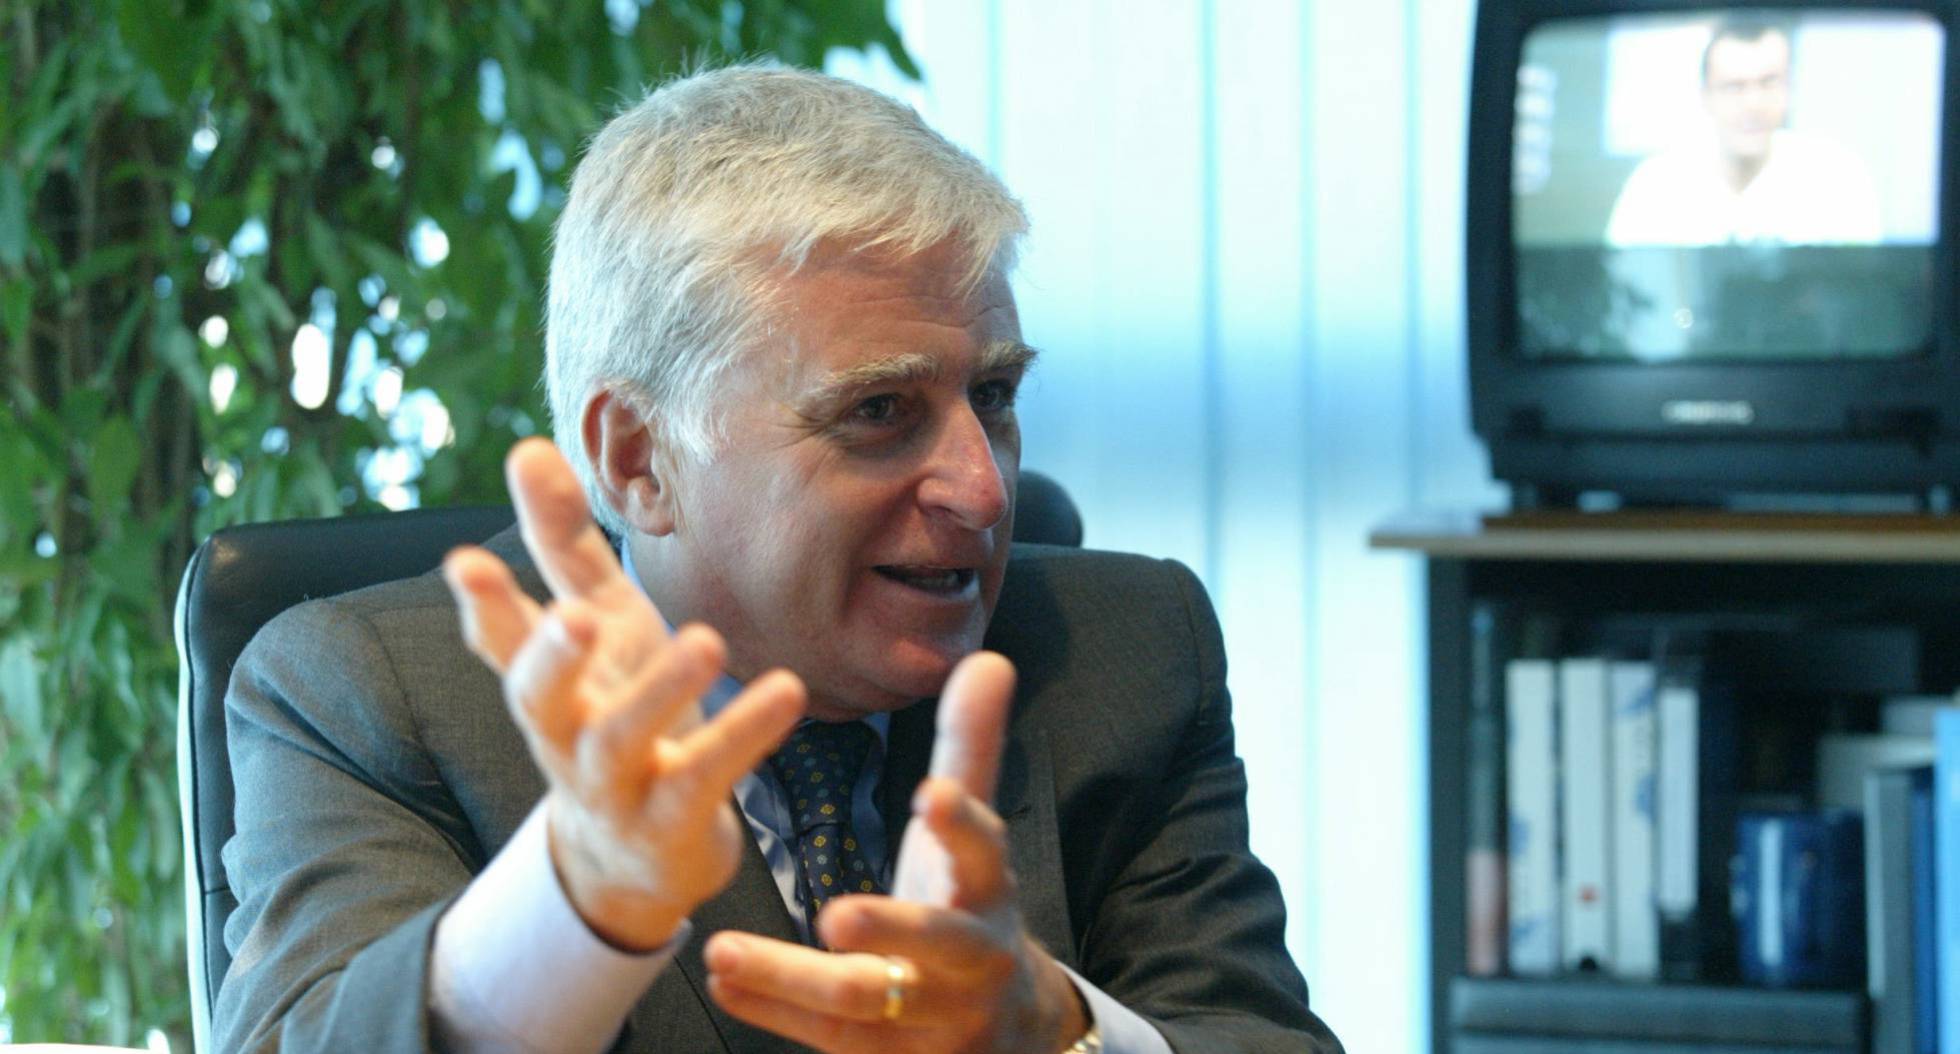 Paolo Vasile dejará su puesto de CEO en Mediaset España